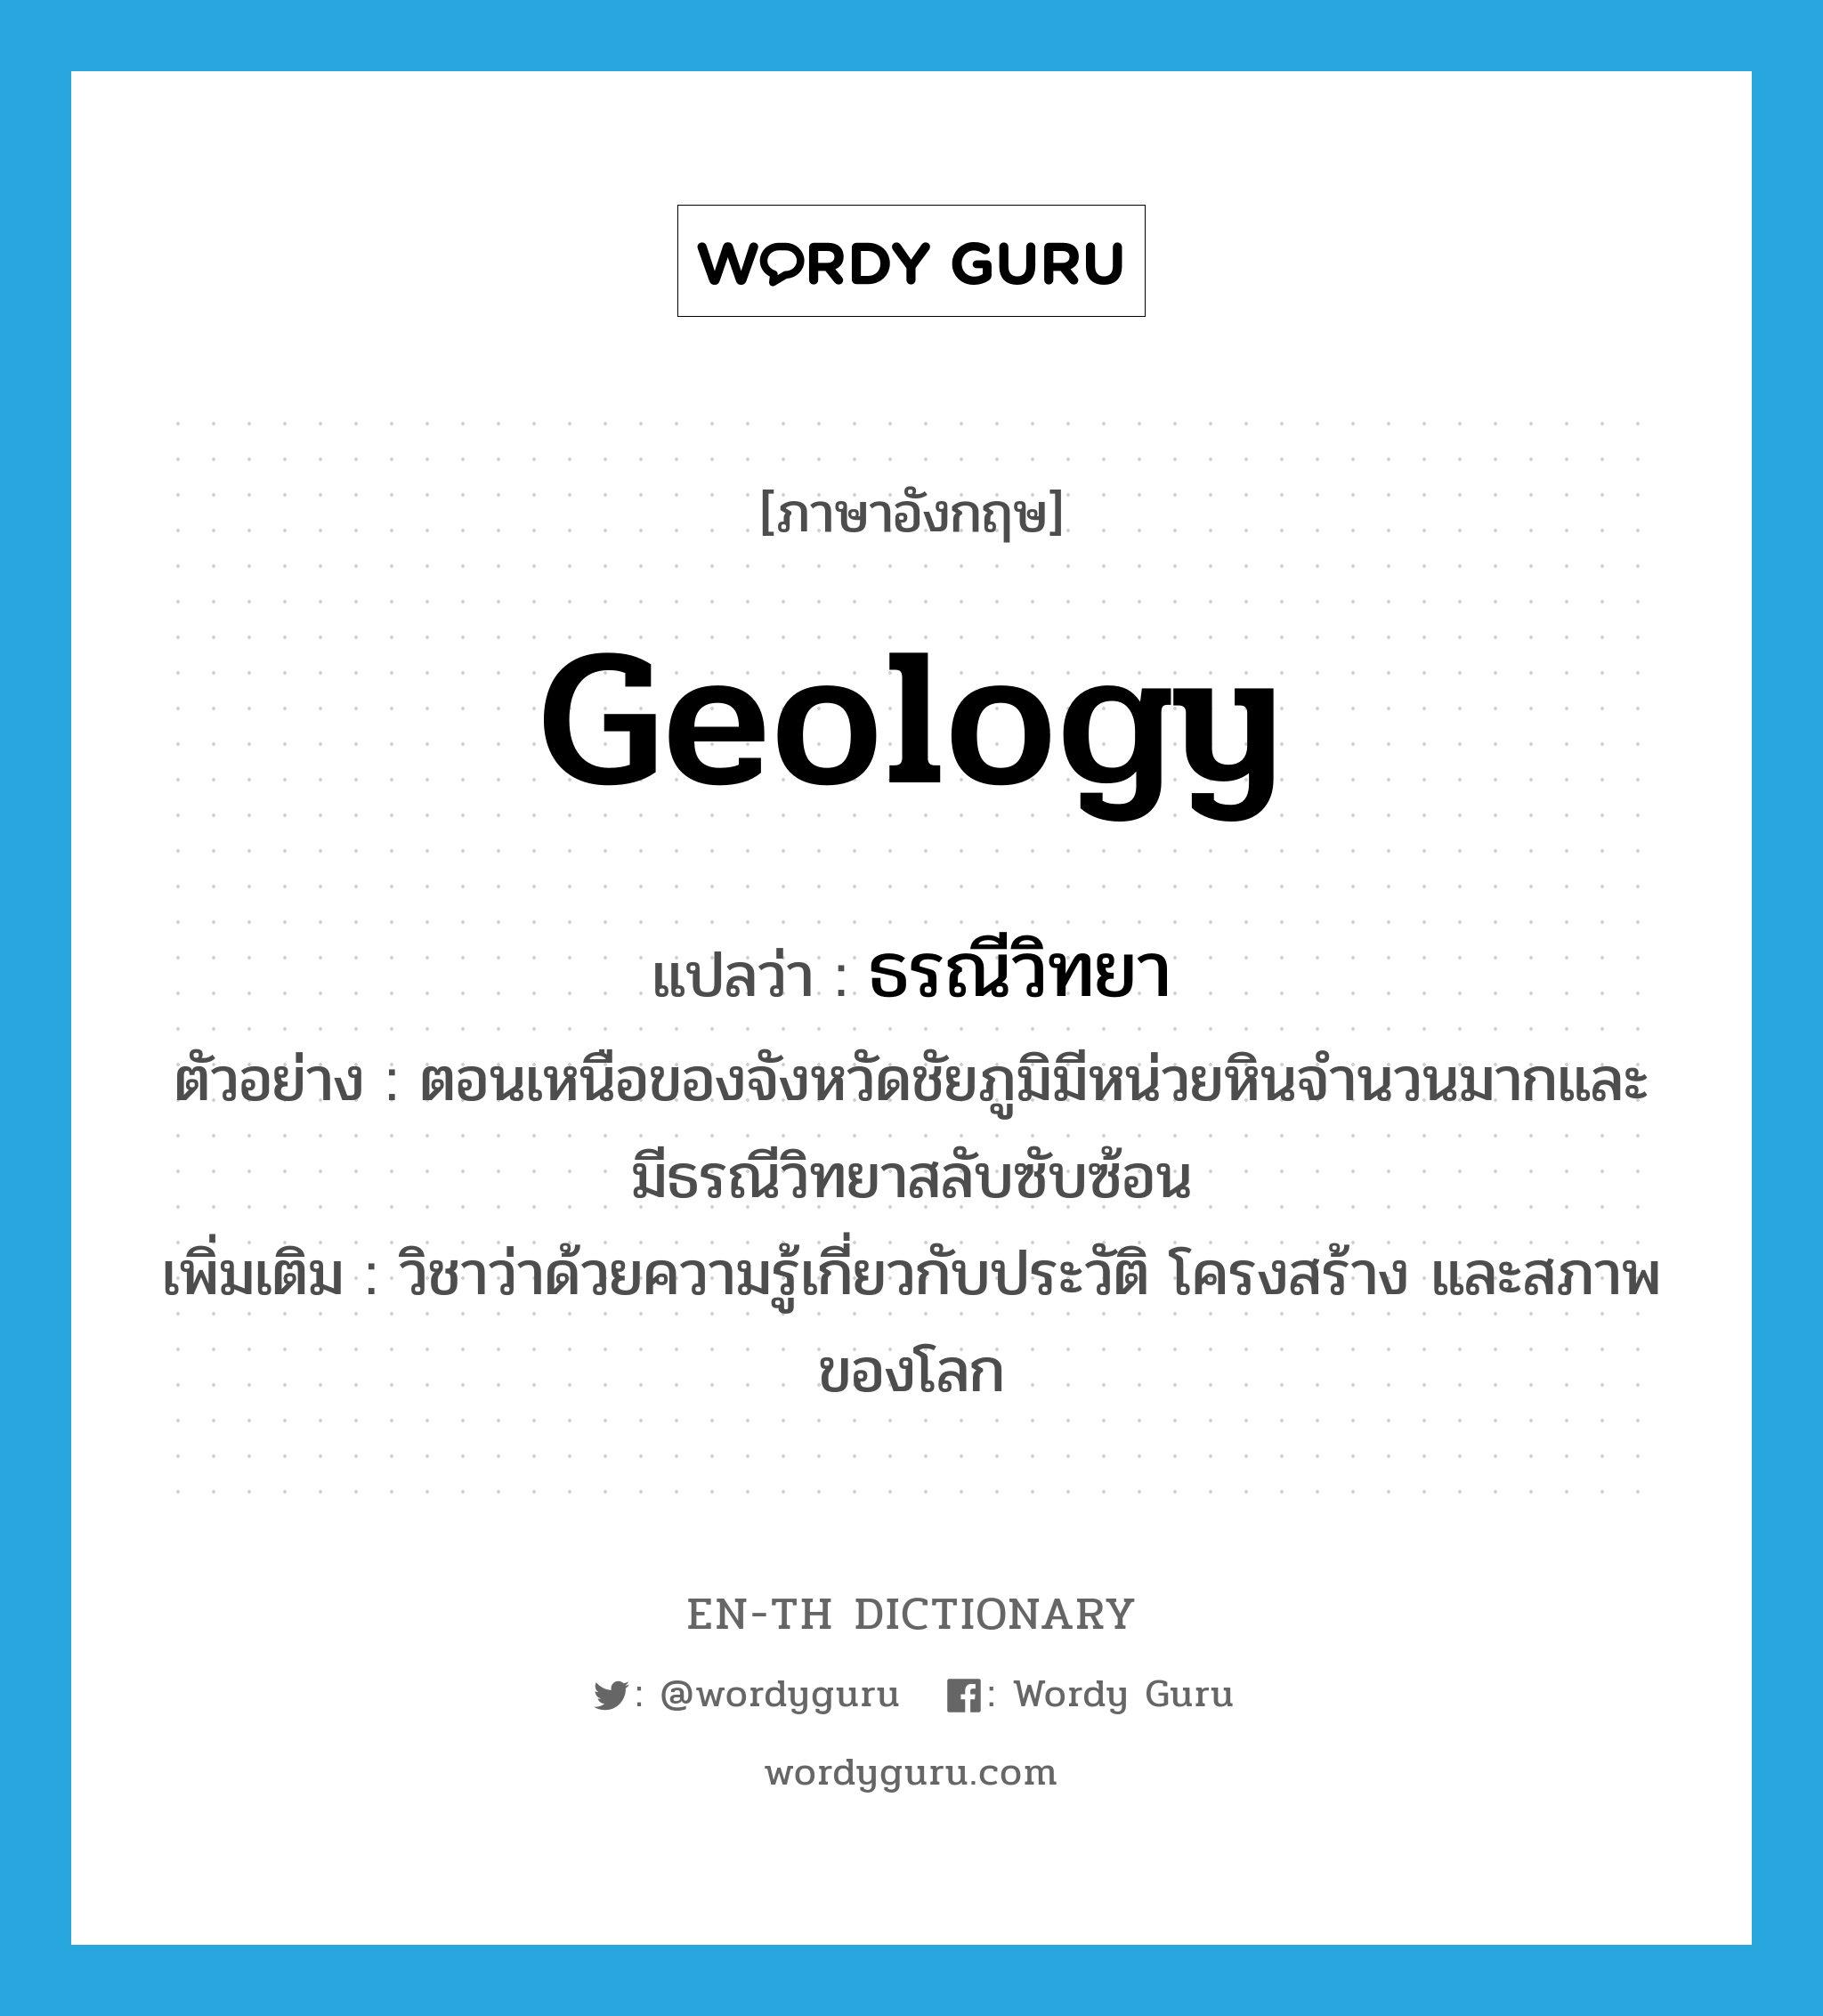 geology แปลว่า?, คำศัพท์ภาษาอังกฤษ geology แปลว่า ธรณีวิทยา ประเภท N ตัวอย่าง ตอนเหนือของจังหวัดชัยภูมิมีหน่วยหินจำนวนมากและมีธรณีวิทยาสลับซับซ้อน เพิ่มเติม วิชาว่าด้วยความรู้เกี่ยวกับประวัติ โครงสร้าง และสภาพของโลก หมวด N